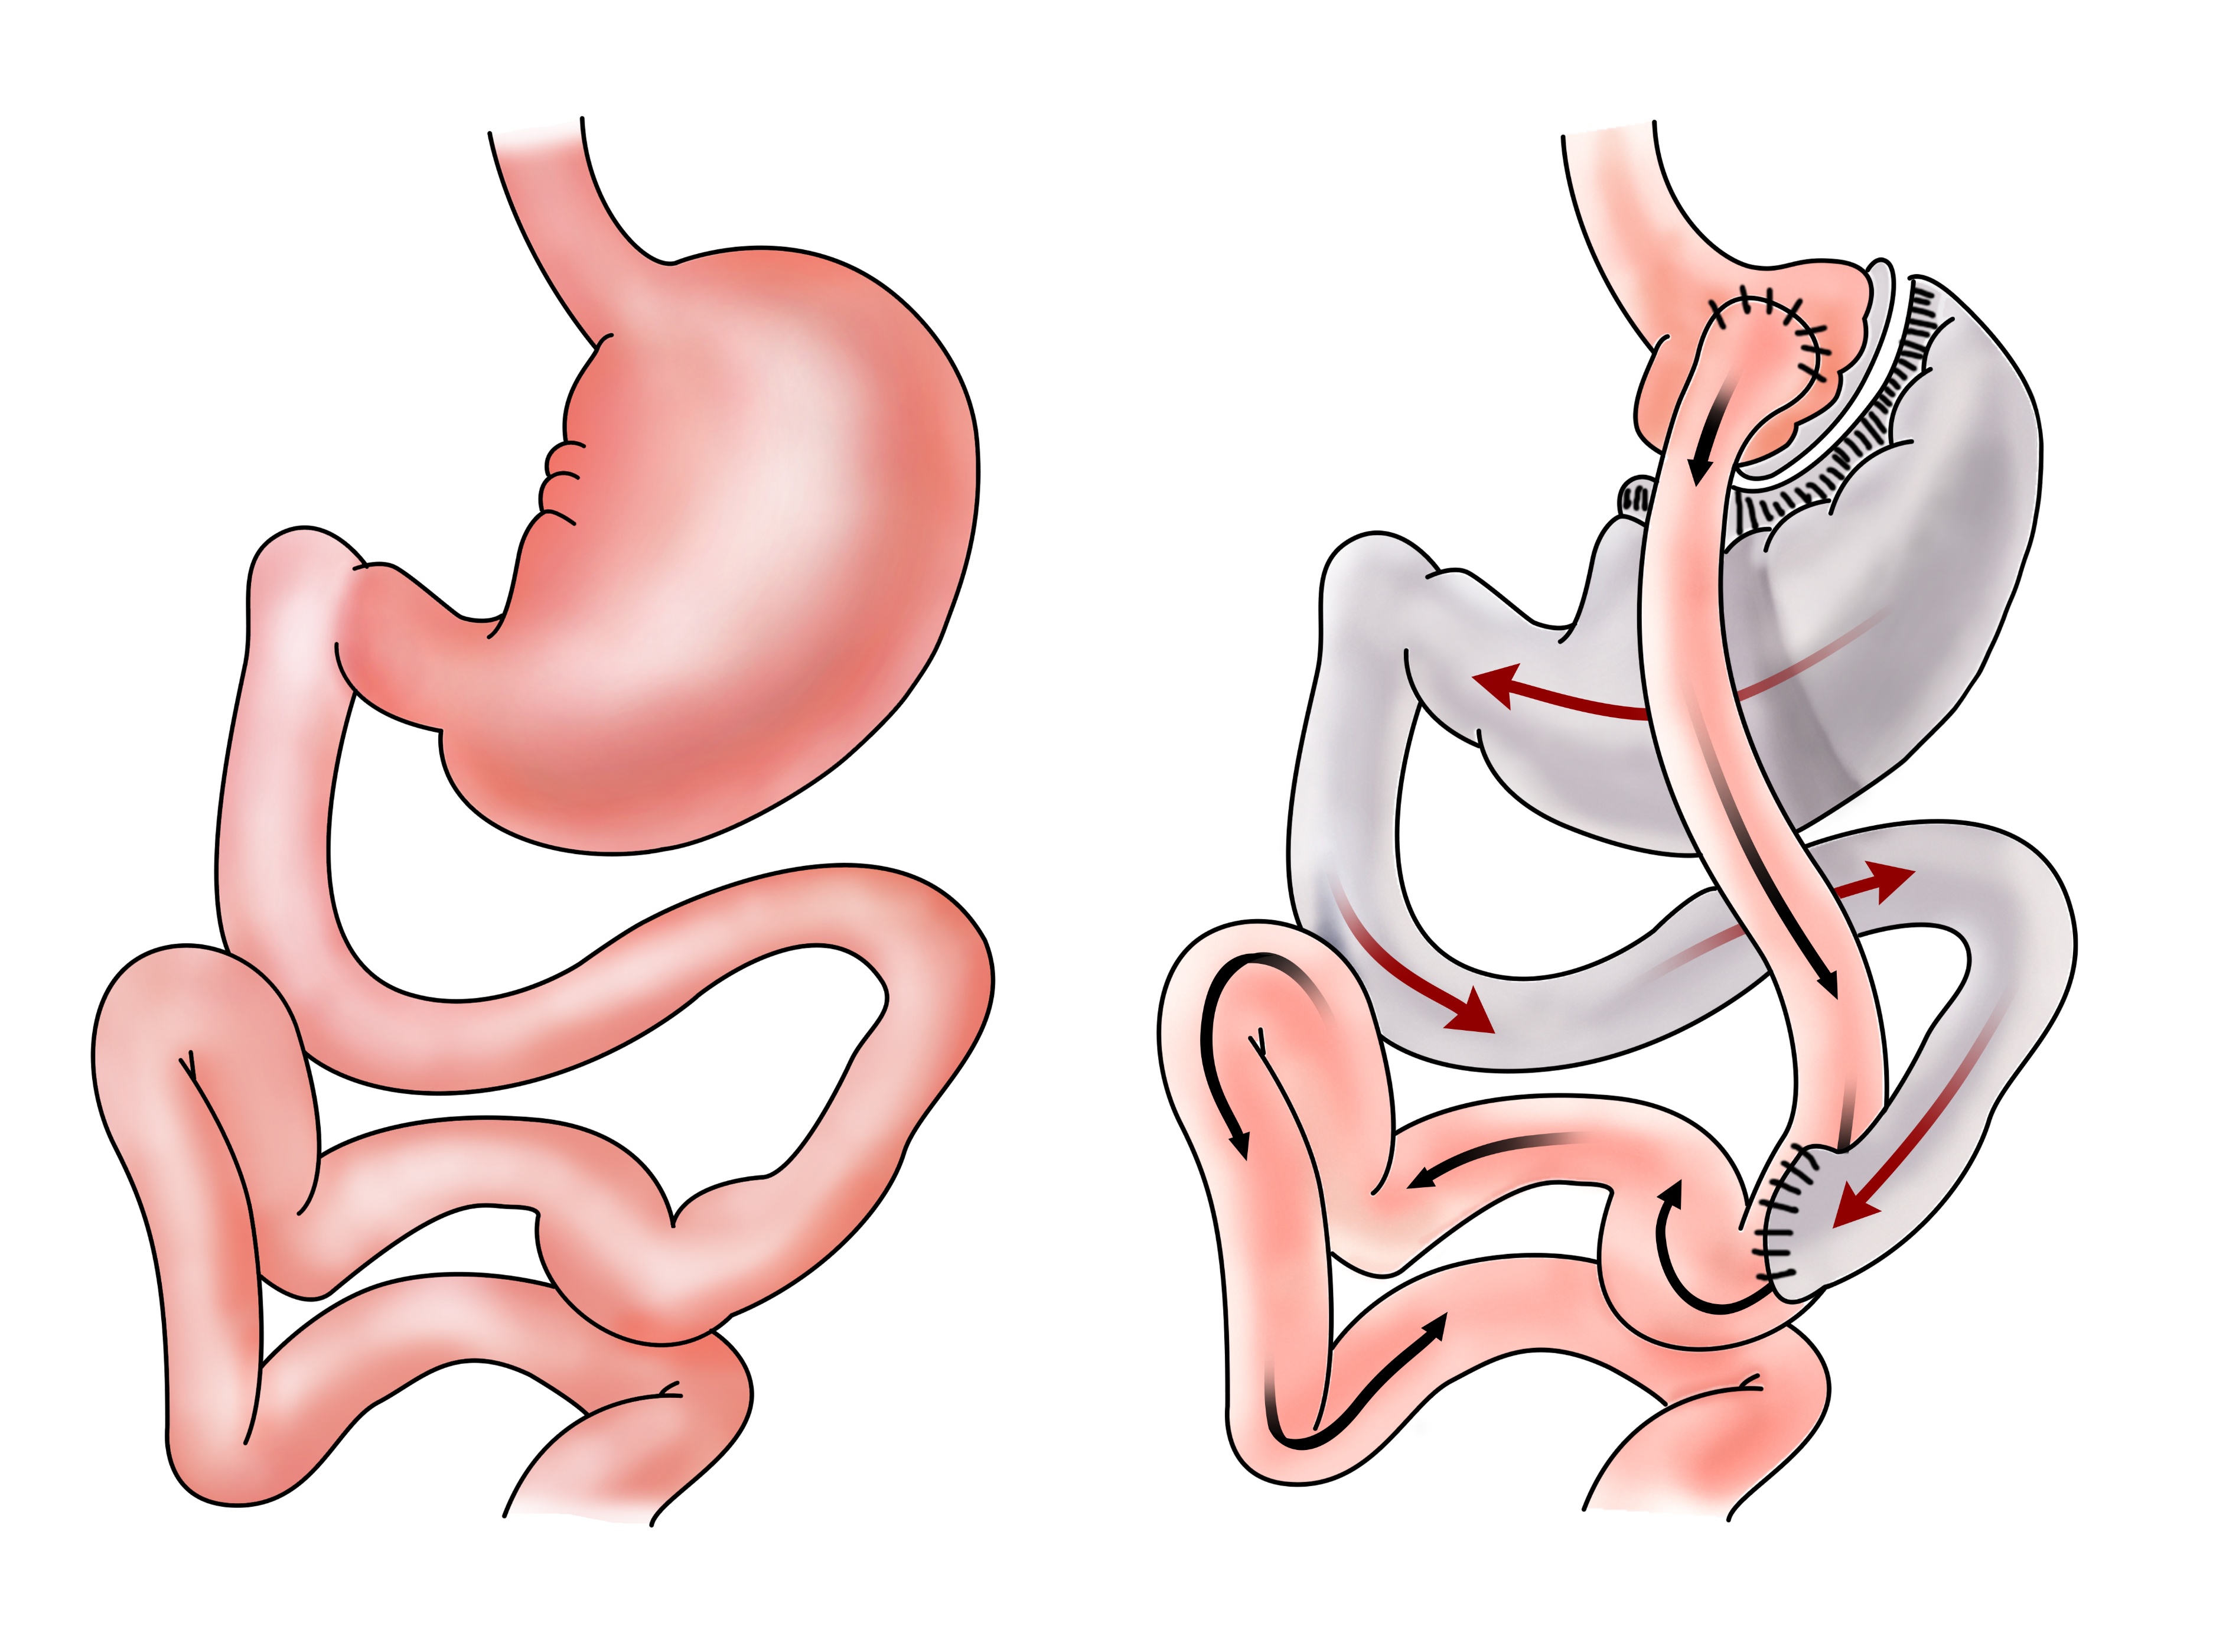 胃套扎手术示意图图片